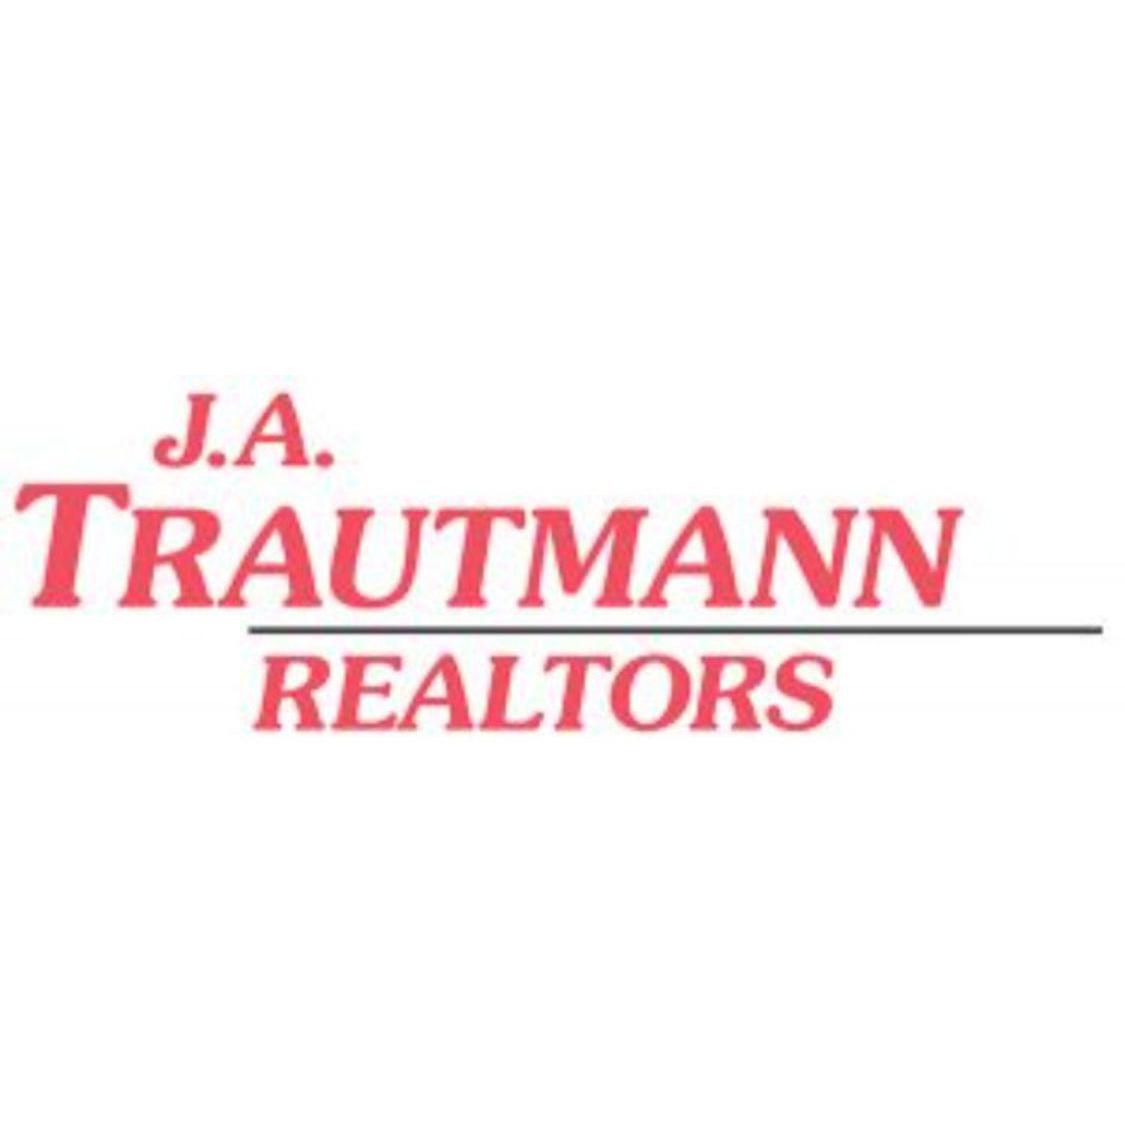 J.A. Trautmann Realtors - Cincinnati, OH 45245 - (513)752-5000 | ShowMeLocal.com